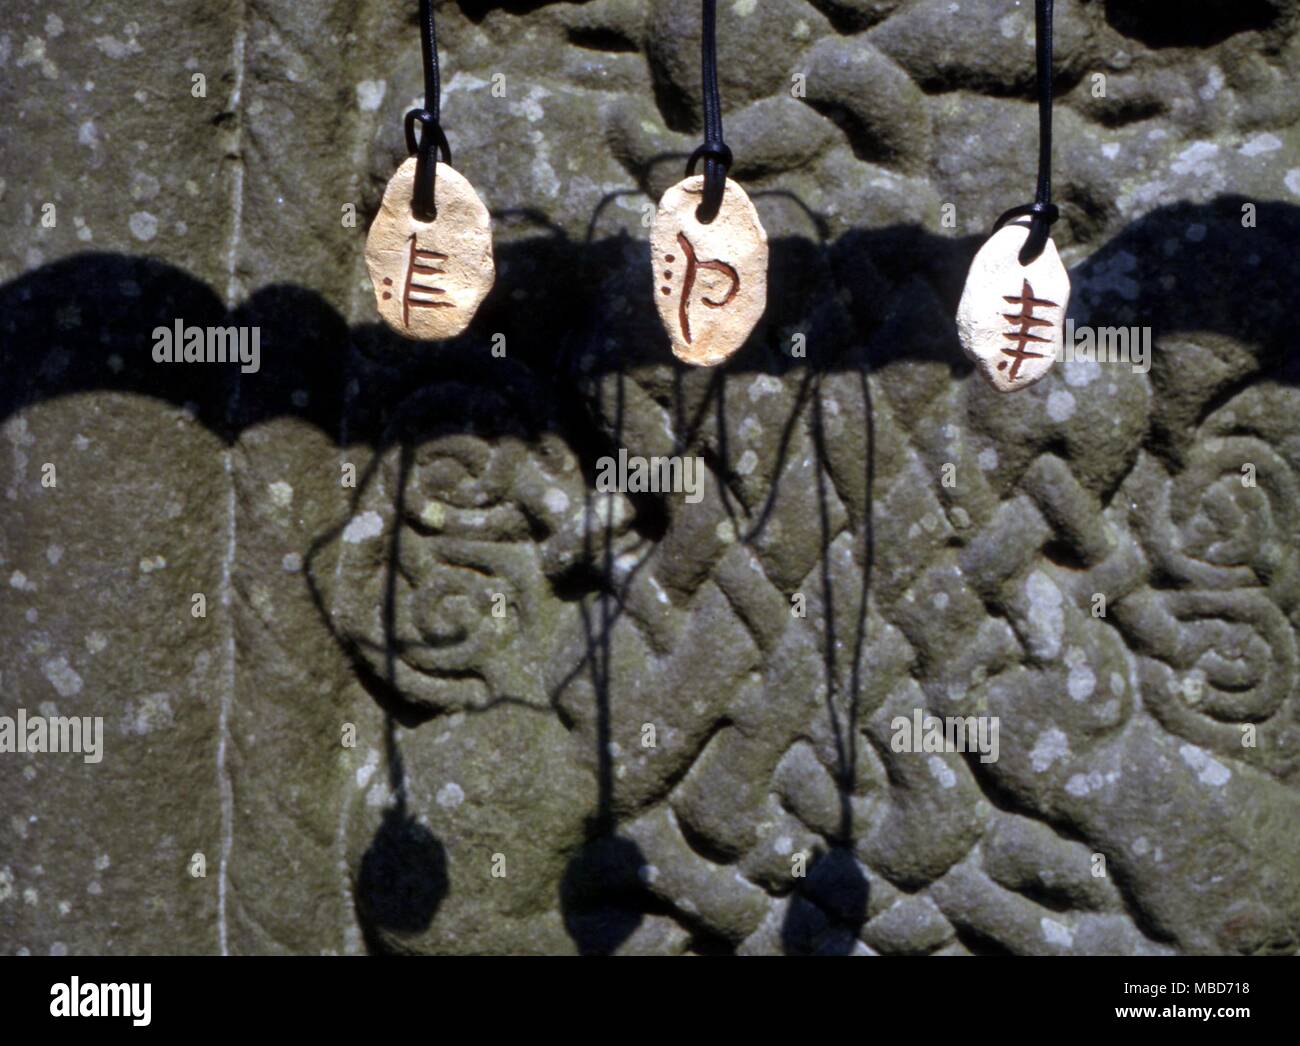 Celtic - Ogham Stones - da sinistra a destra - Febbraio (Willow) Massa (faggio, la Phagos) e acqua (pioppo ). Appendere in prossimità dello zoccolo della Croce del Sud a Monasterboice, Irlanda - l alfabeto Ogham è detto di avere origine nel quarto o quinto secolo in Irlanda meridionale. È ampiamente considerato come il più antico alfabeto utilizzato in Irlanda. L'alfabeto prende il suo nome da Ogma l antico dio celtico di eloquio o il bel discorso. Essa è stata Ogma, come narra la leggenda che ha ispirato questo alfabeto. I principali venti lettere in questo alfabeto sono divisi in quattro categorie di cinque suoni (vedere alfa Foto Stock